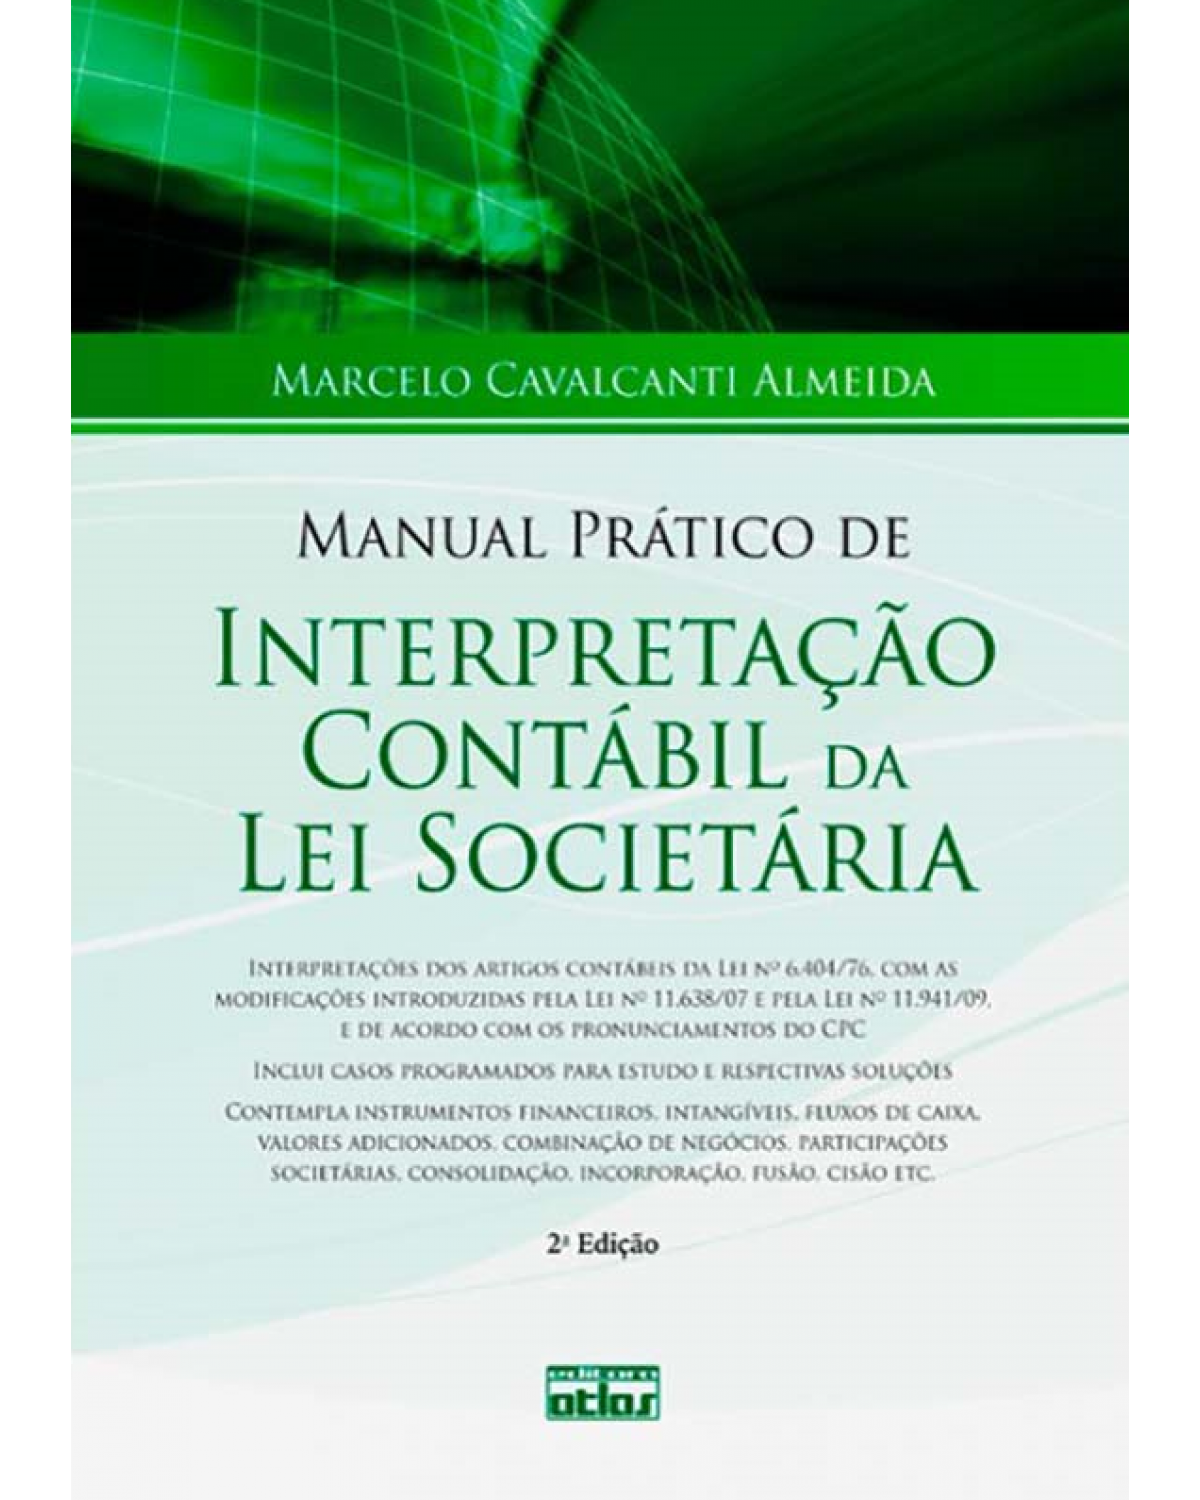 Manual prático de interpretação contábil da lei societária - 2ª Edição | 2012